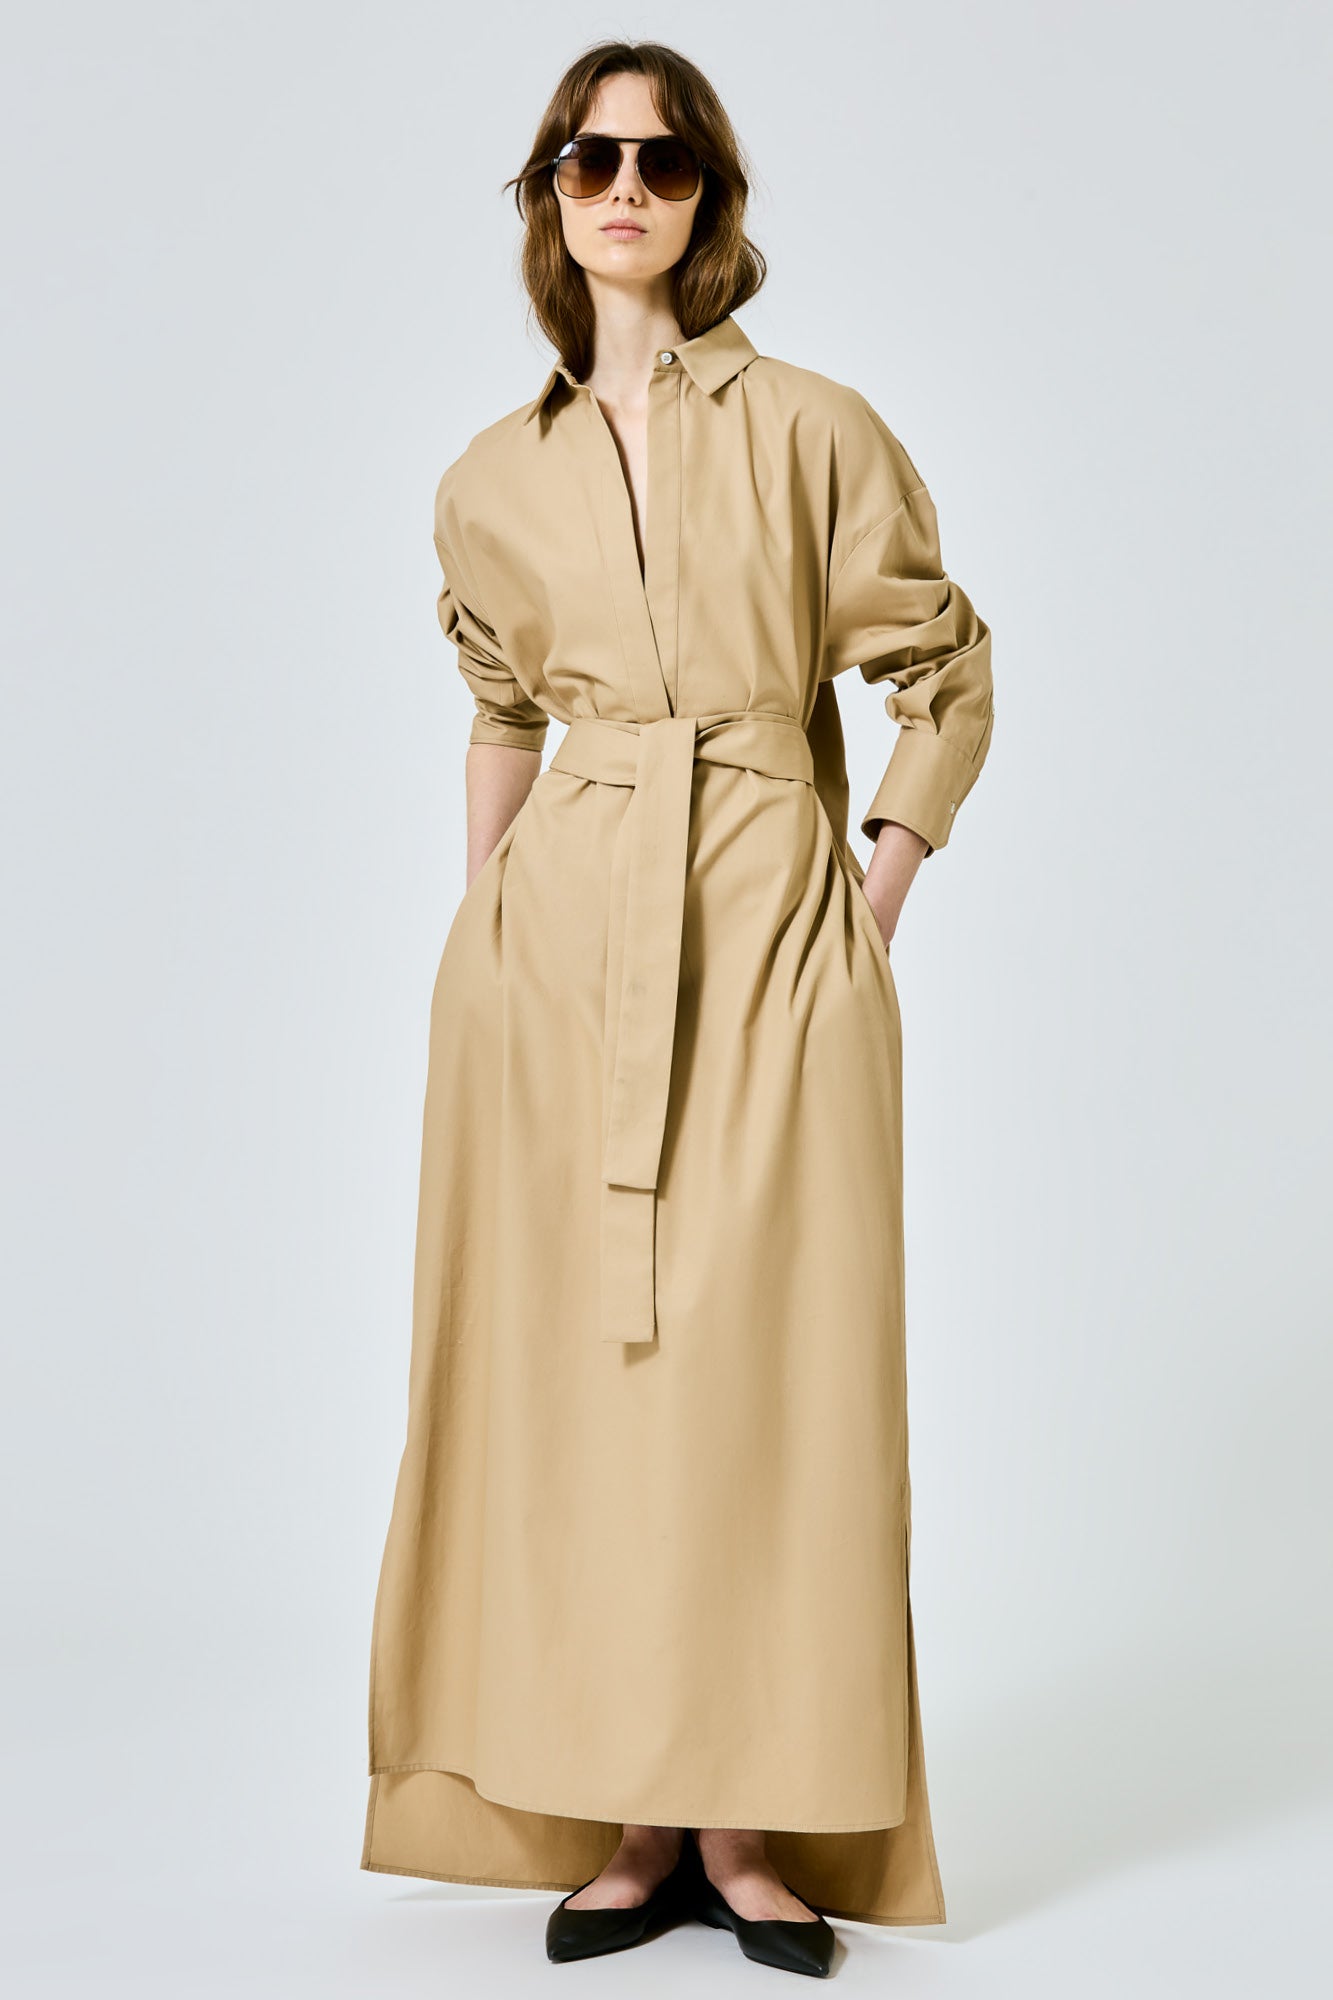 Francesca long dress in cotton silk